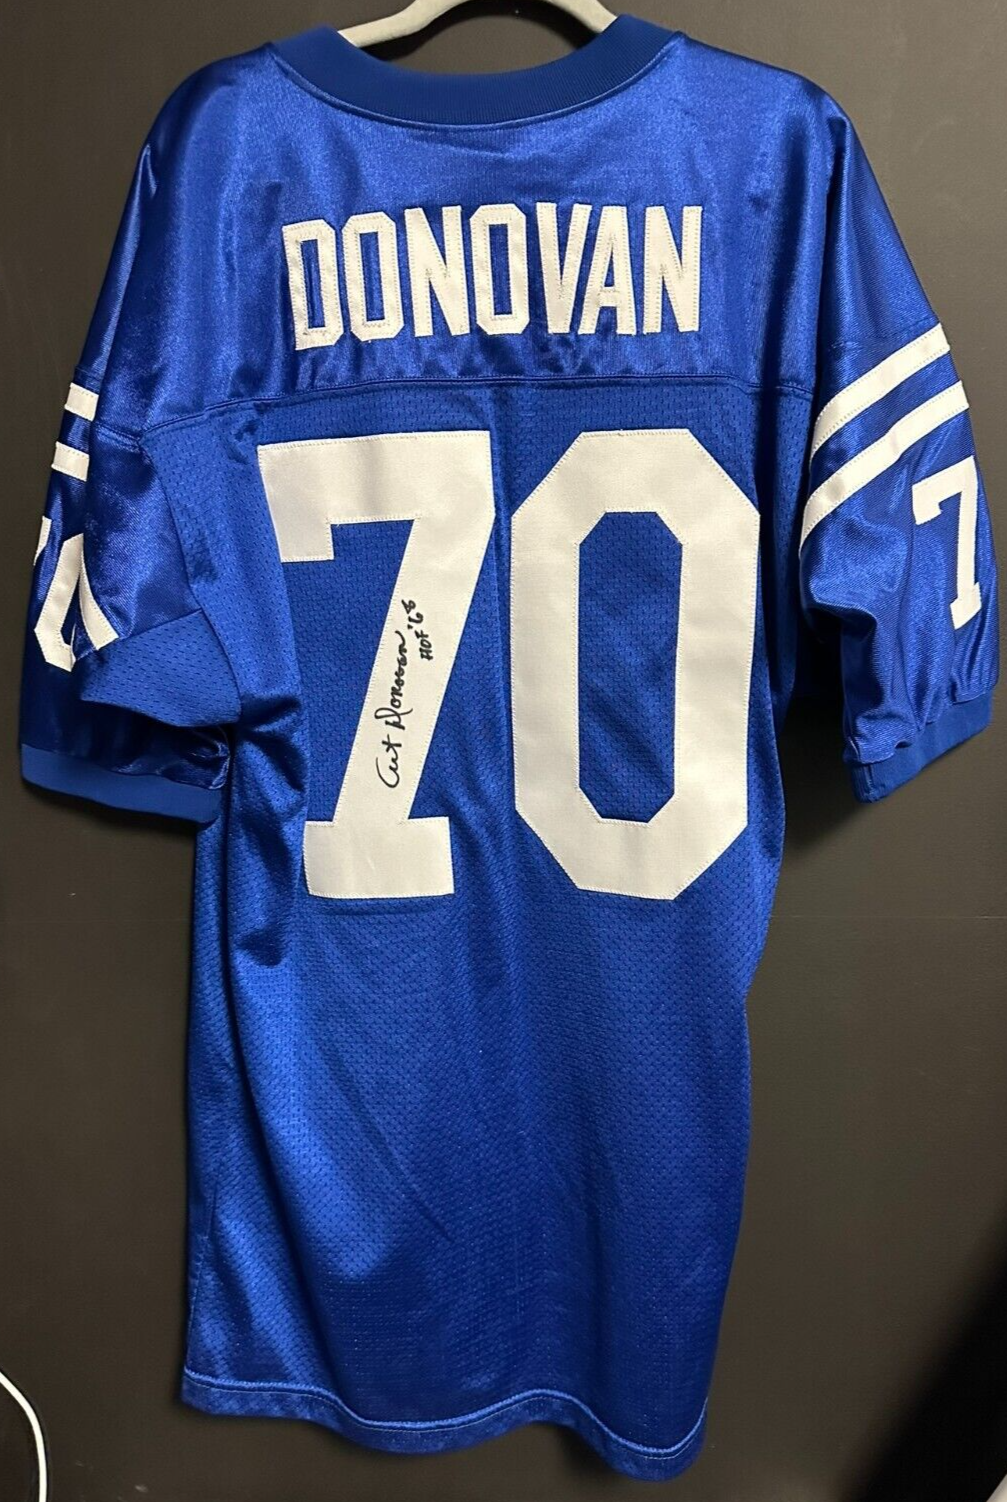 Art Donovan Autographed Jesco Baltimore Colts Authentic Jersey W/ HOF 68